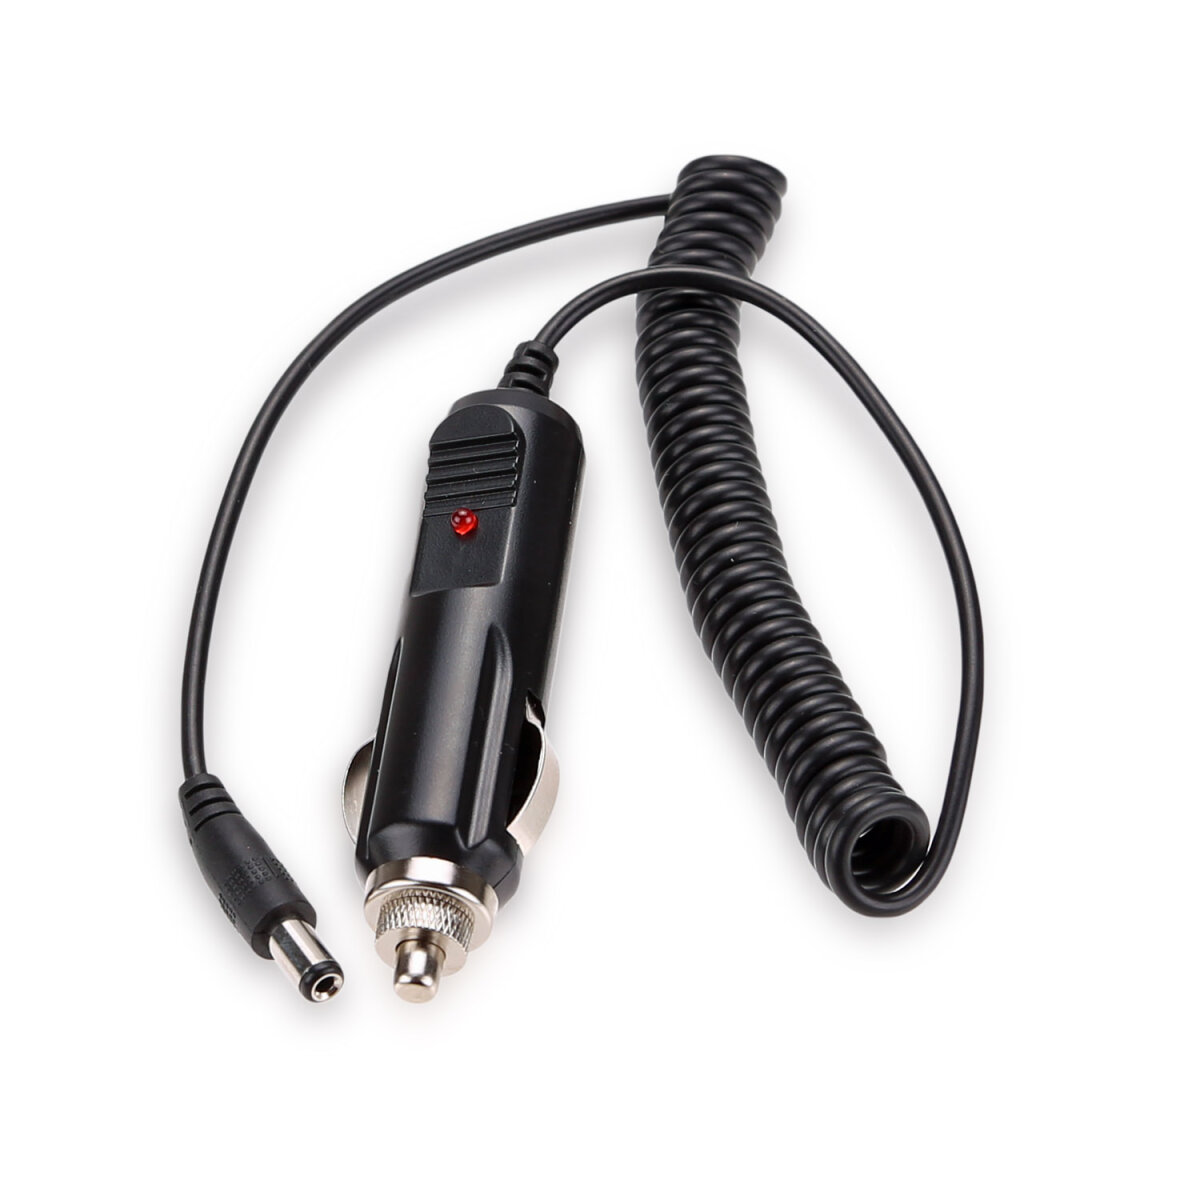 Tragbare 12 V Auto zigarettenanzünder stecker kabel mit DC 5,5mm * 2,1mm  stecker für auto ladegerät Verlängerungskabel Buchse Kabel - AliExpress